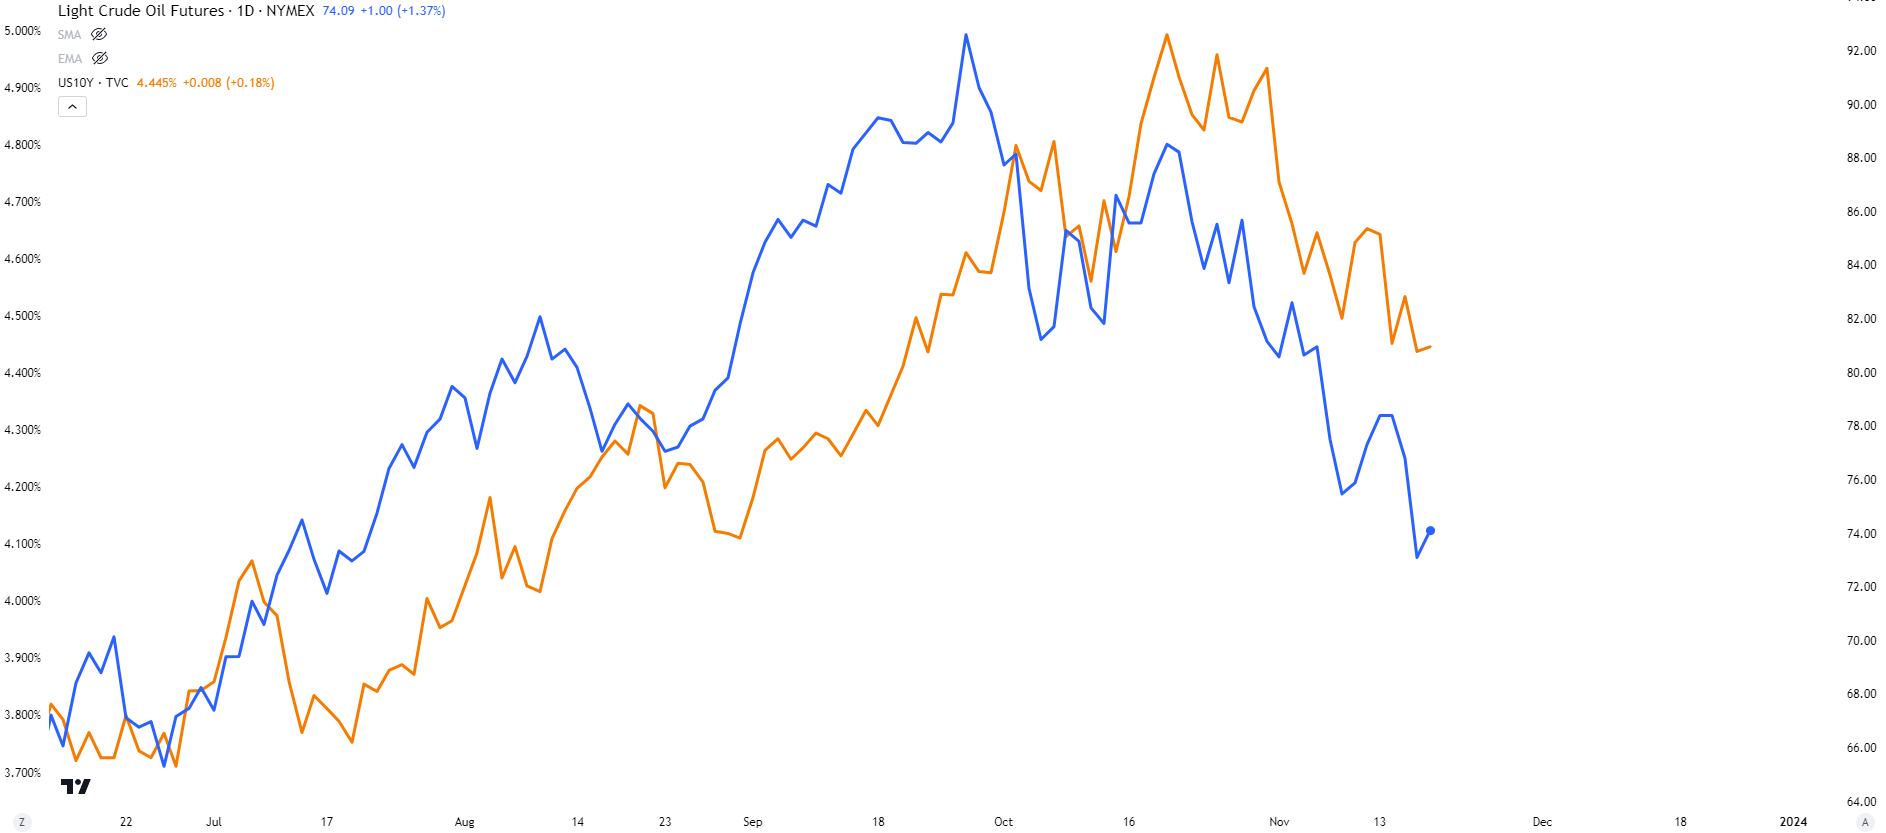 Oil vs Bond yields